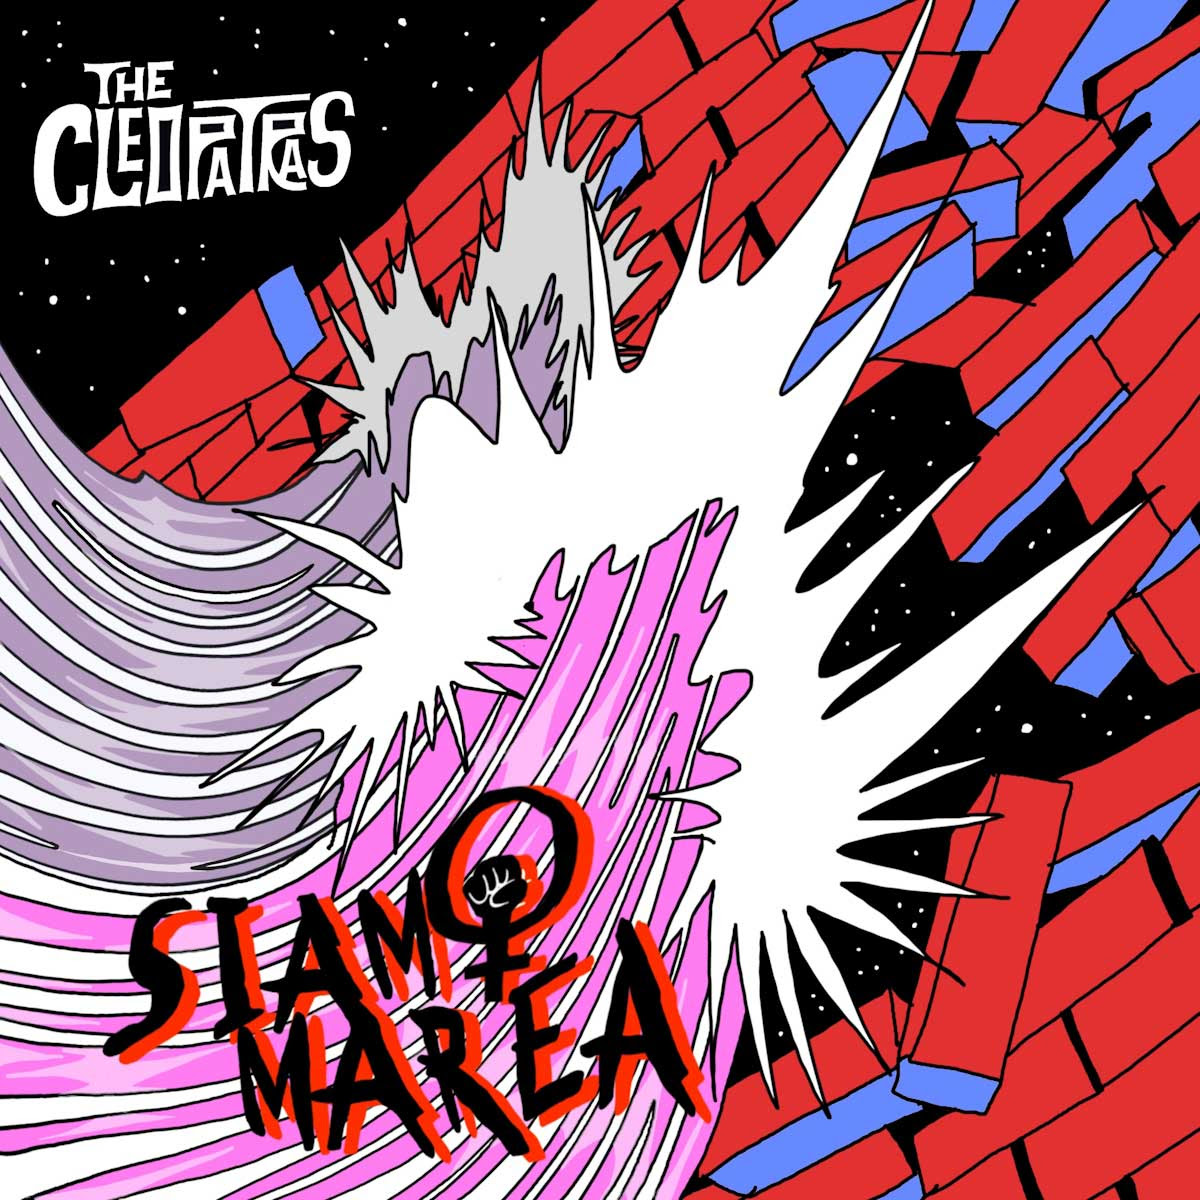 THE CLEOPATRAS: dal 17 maggio in radio il nuovo singolo “SIAMO MAREA”, che anticipa l’uscita dell’EP “NATURALMENTE PUNK”